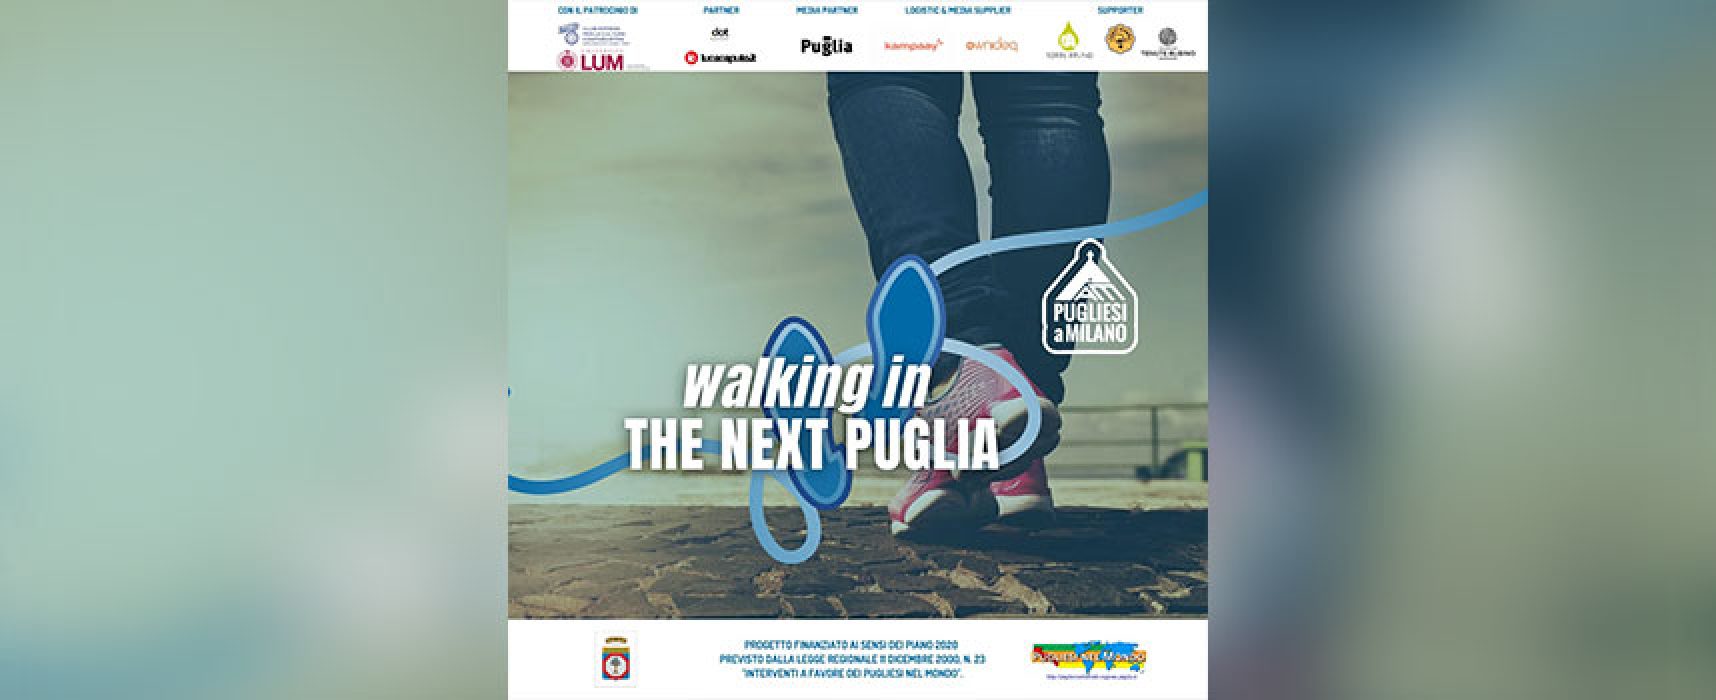 Azienda biscegliese a supporto del progetto “Walking in the next Puglia”